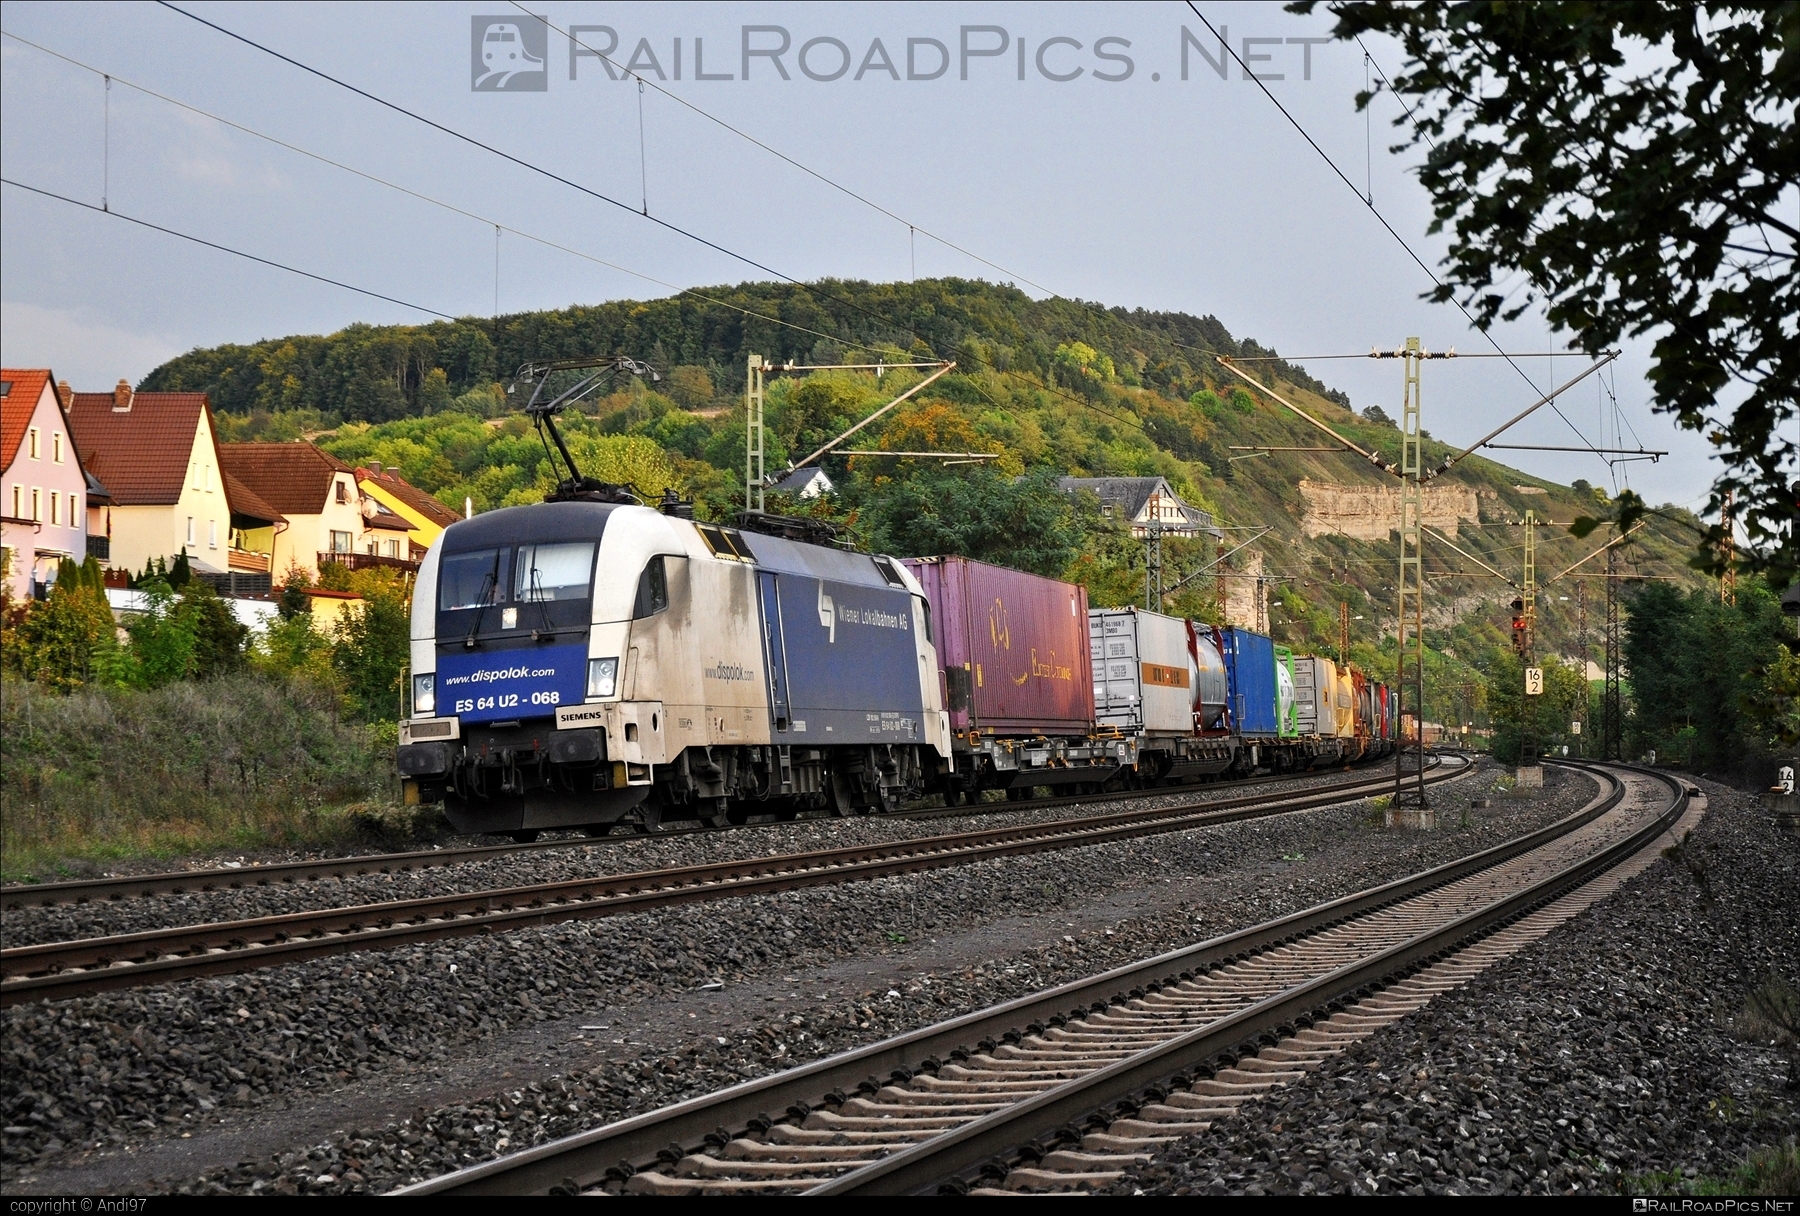 Siemens ES 64 U2 - 182 568 operated by Wiener Lokalbahnen Cargo GmbH #container #dispolok #es64 #es64u2 #eurosprinter #flatwagon #mitsuirailcapitaleurope #mitsuirailcapitaleuropegmbh #mrce #siemens #siemensEs64 #siemensEs64u2 #siemenstaurus #tauruslocomotive #wienerlokalbahnencargo #wienerlokalbahnencargogmbh #wlc